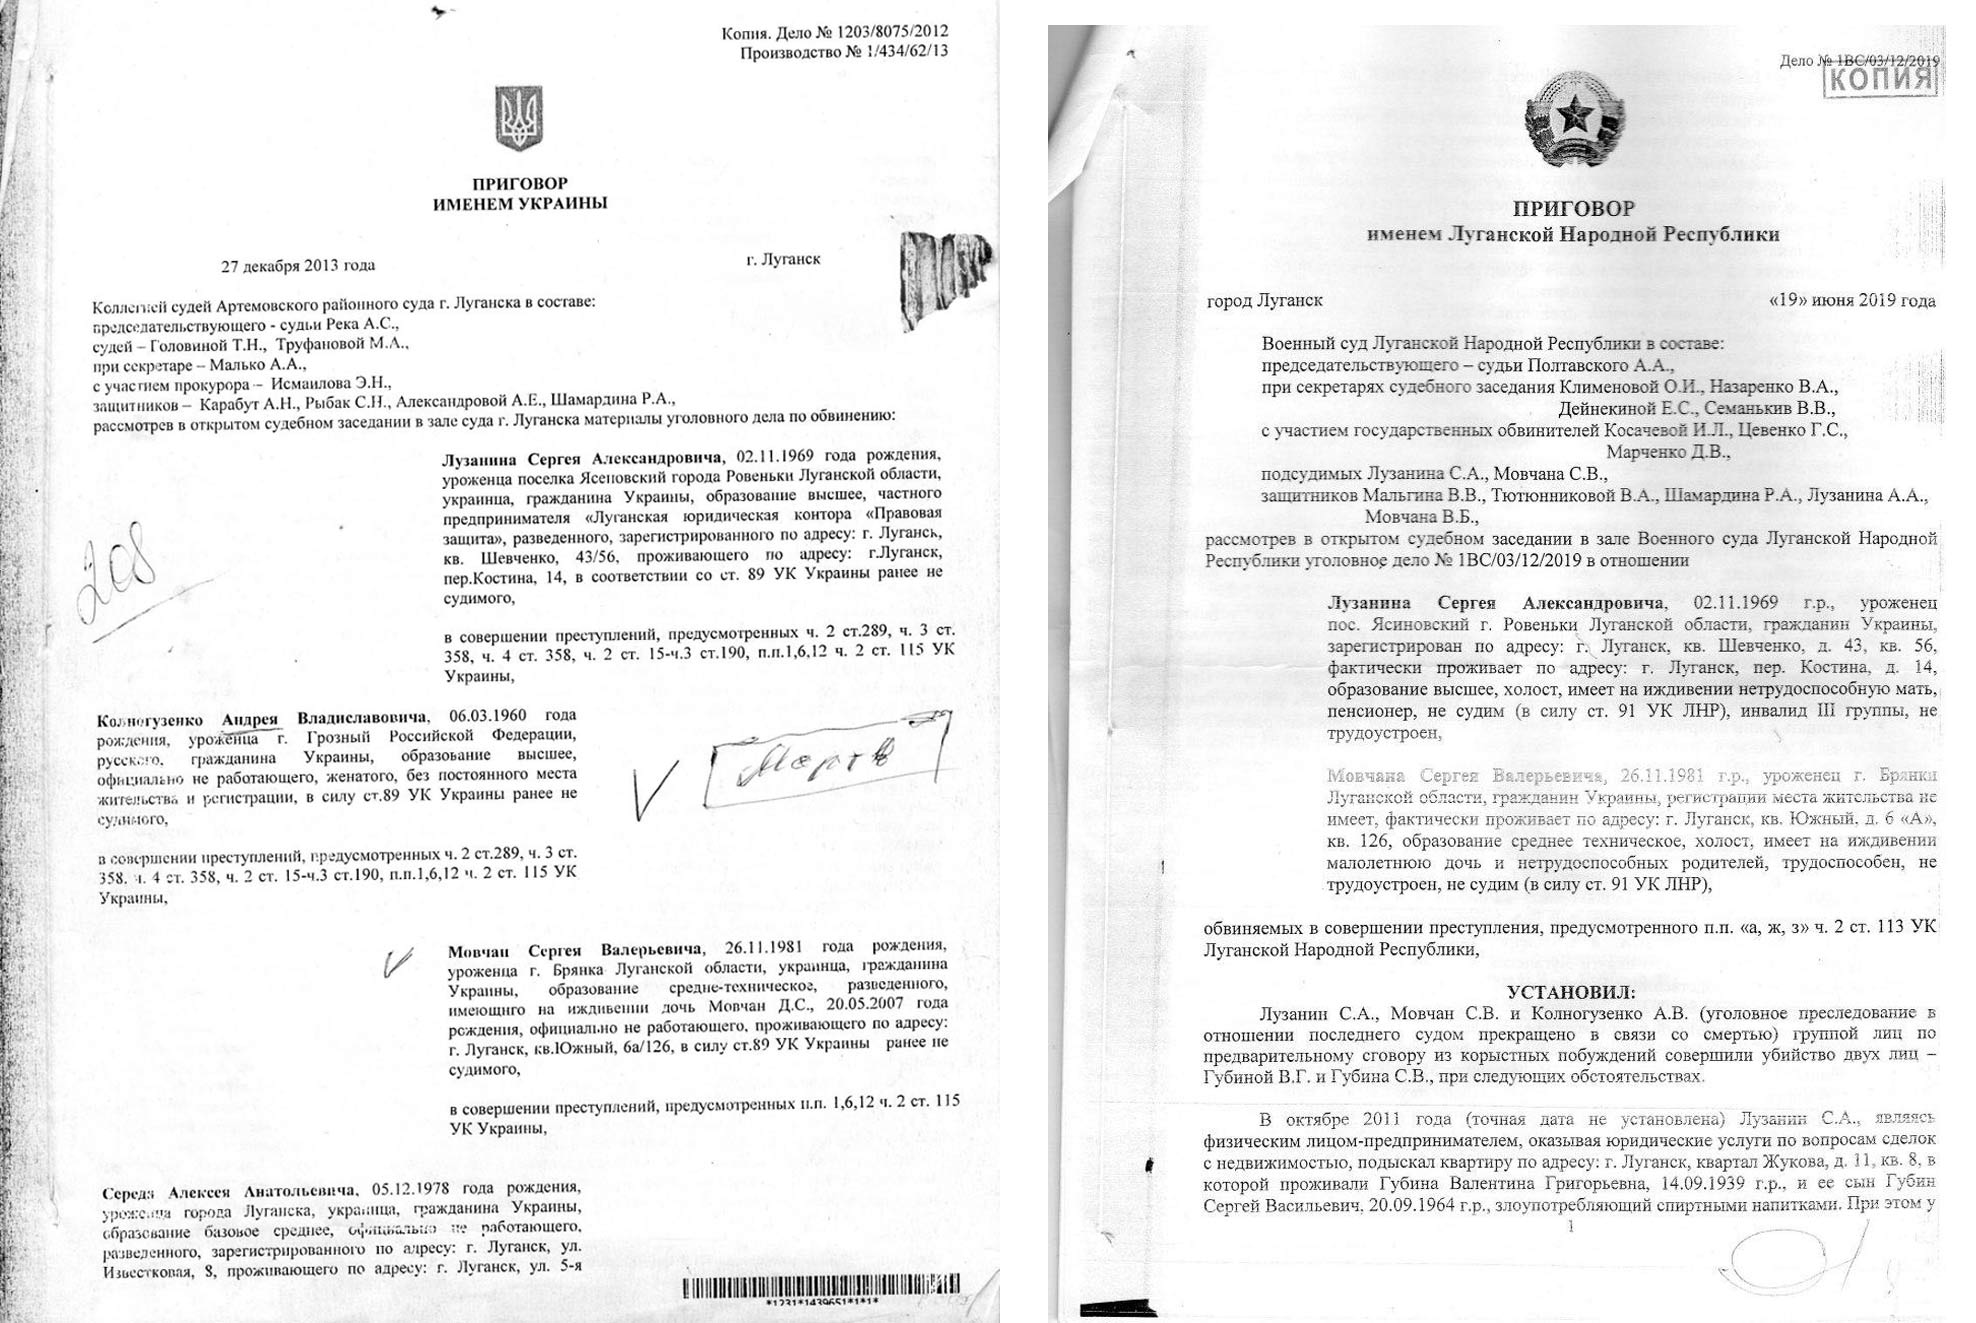 Копии приговоров Сергею Мовчану от украинского суда и от суда ЛНР